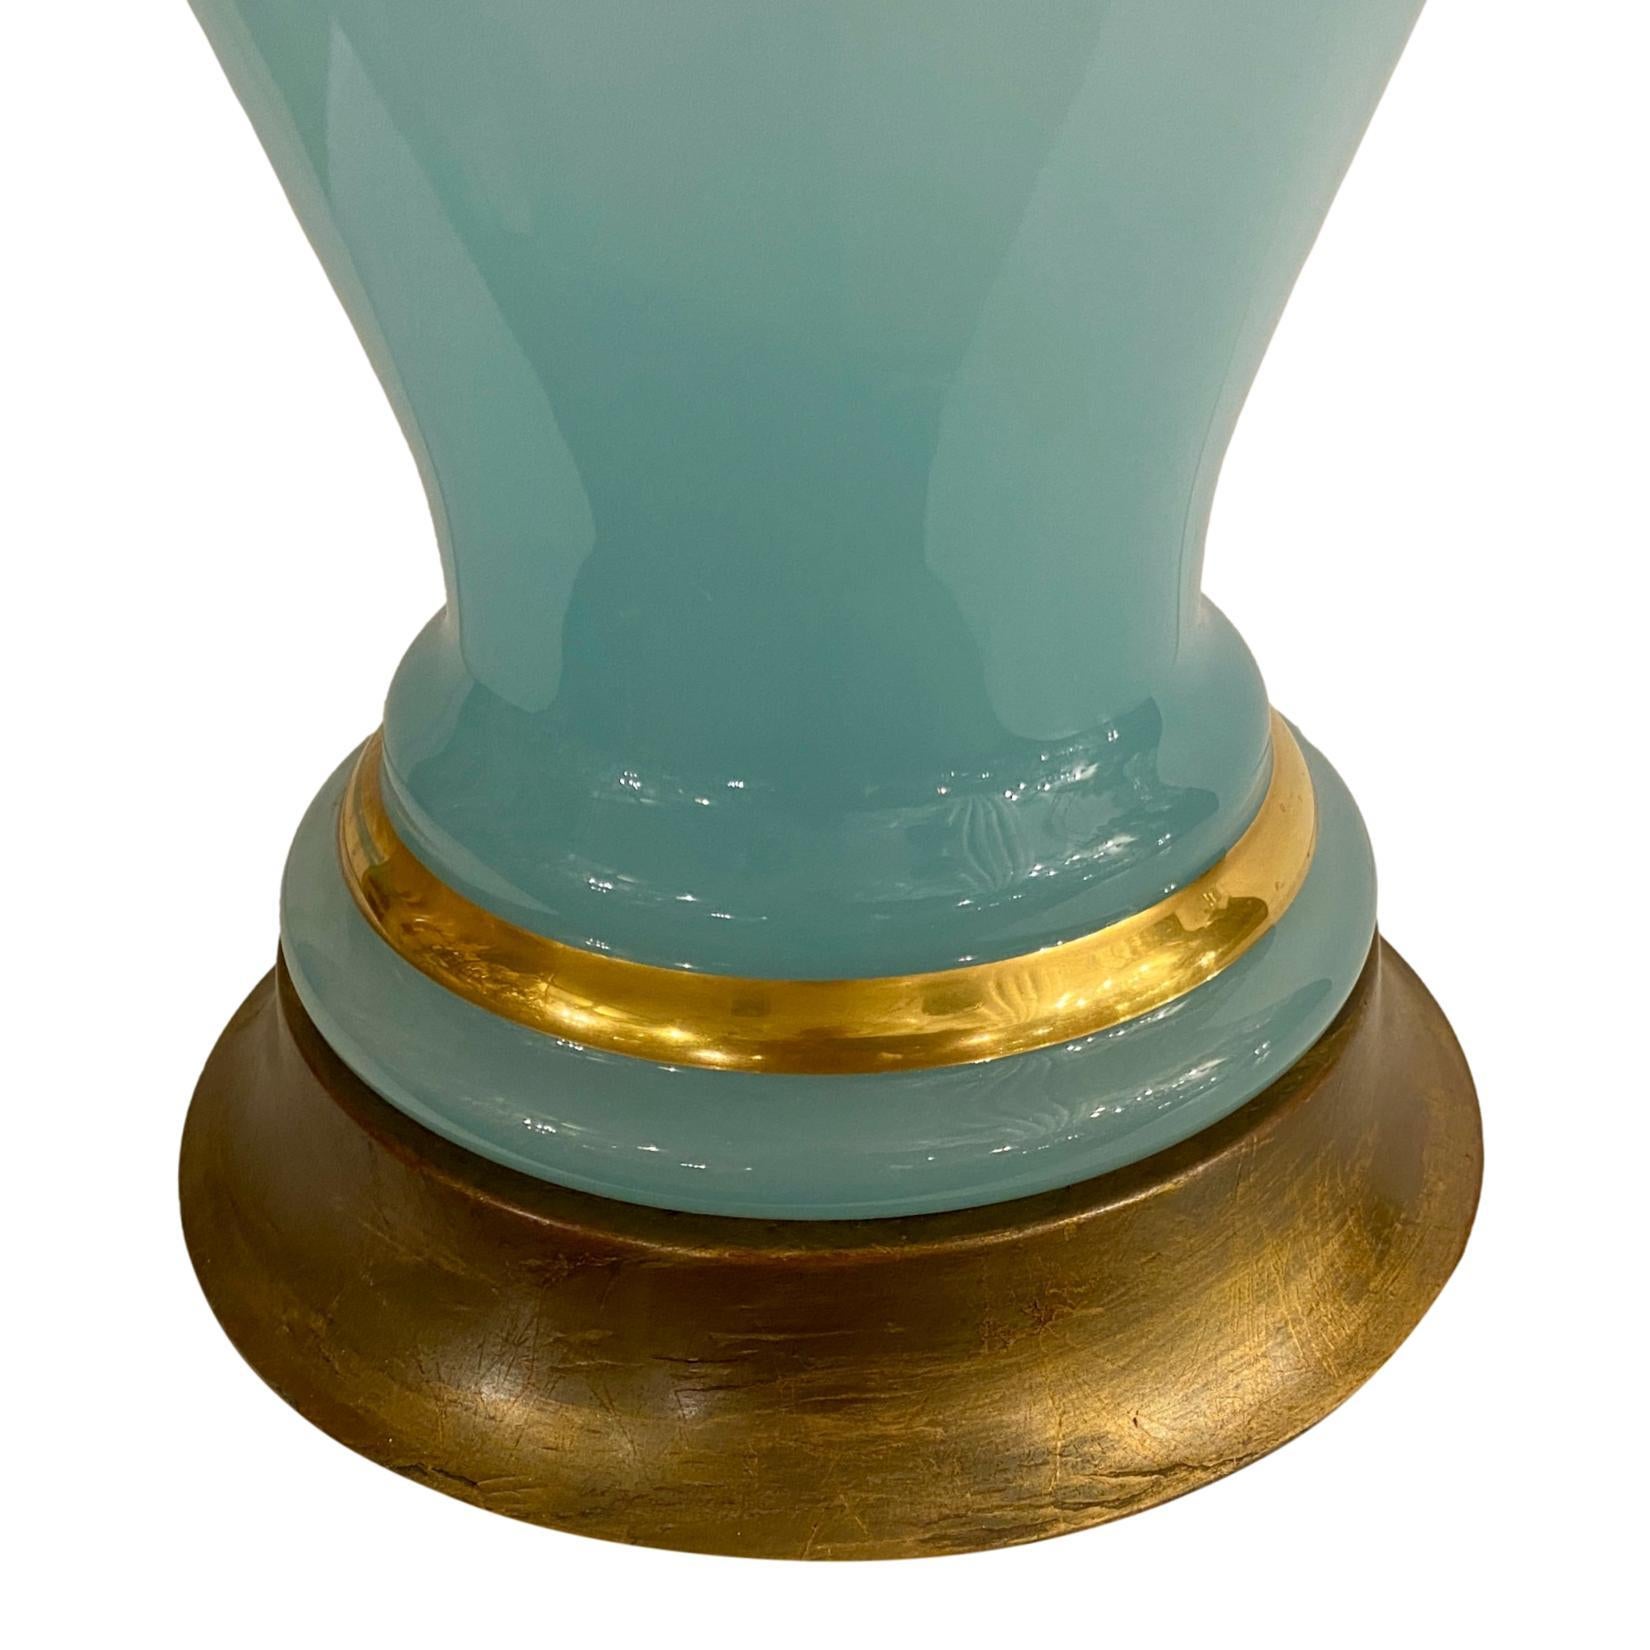 Lampe de table française en opaline bleu clair des années 1920, avec des détails dorés sur le corps.

Mesures :
Hauteur du corps : 23
Hauteur jusqu'à l'appui de l'abat-jour : 34